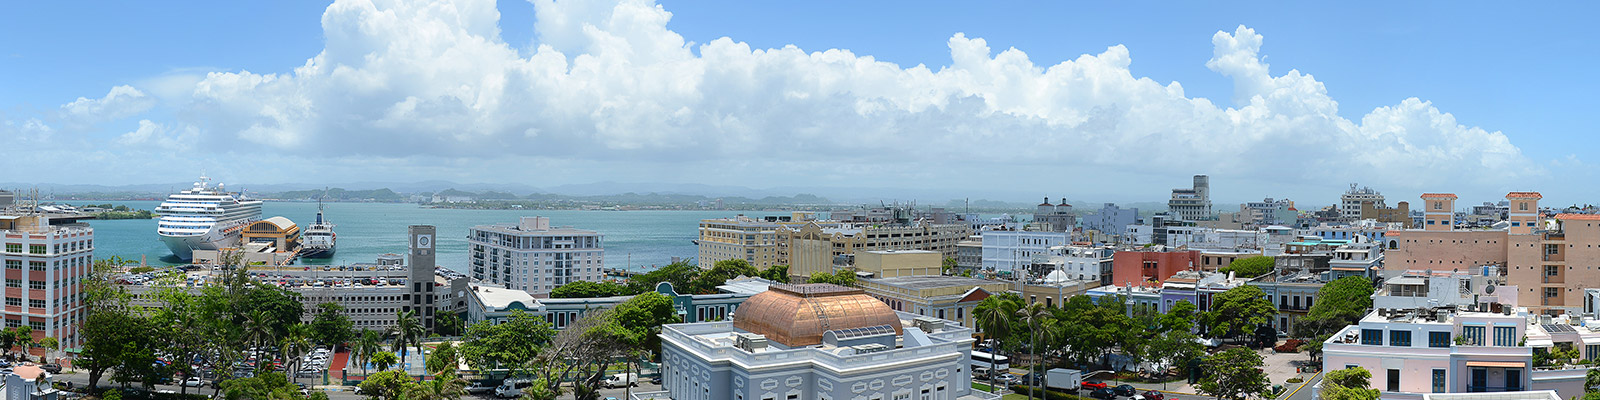 Puerto Rico/U.S. Virgin Islands